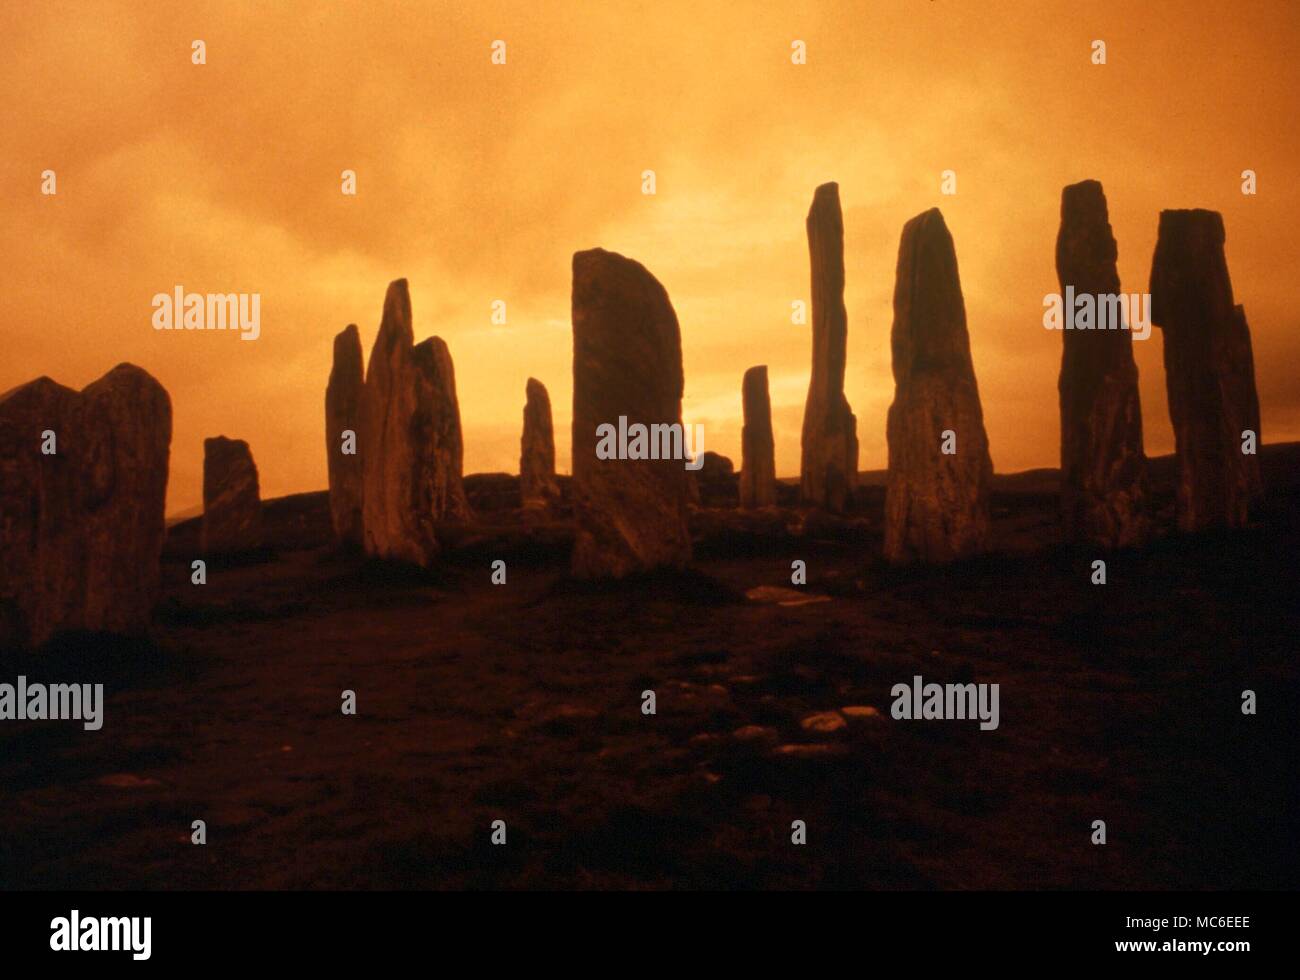 Círculos de piedra - Callanish. El círculo de piedras de Callanish en la isla de Lewis. Las piedras fueron erigidas para conmemorar importantes ajustes calendrical del sol y la luna, circa 2.500 A.C. Foto de stock